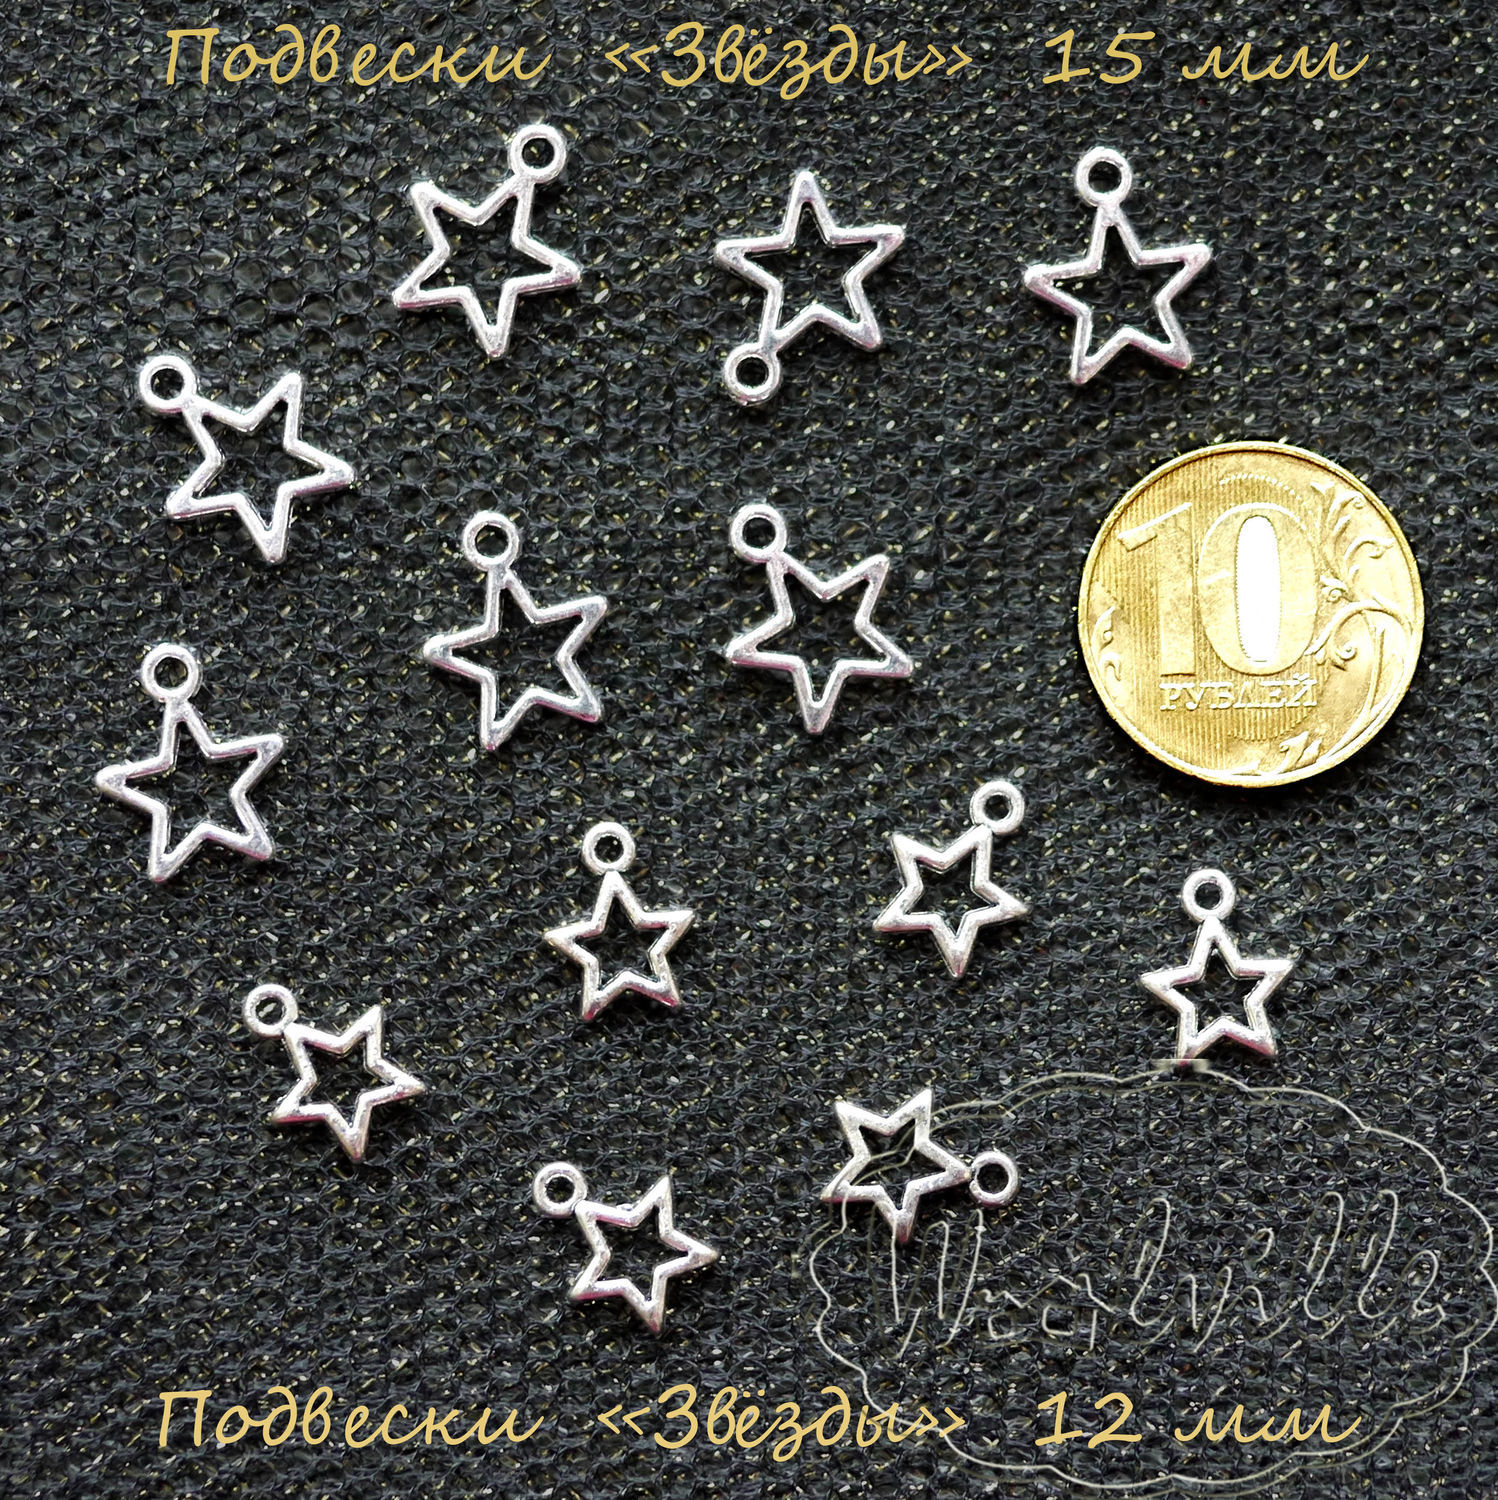 Звезда на погоны металл. рифленая, 13 мм, зол.